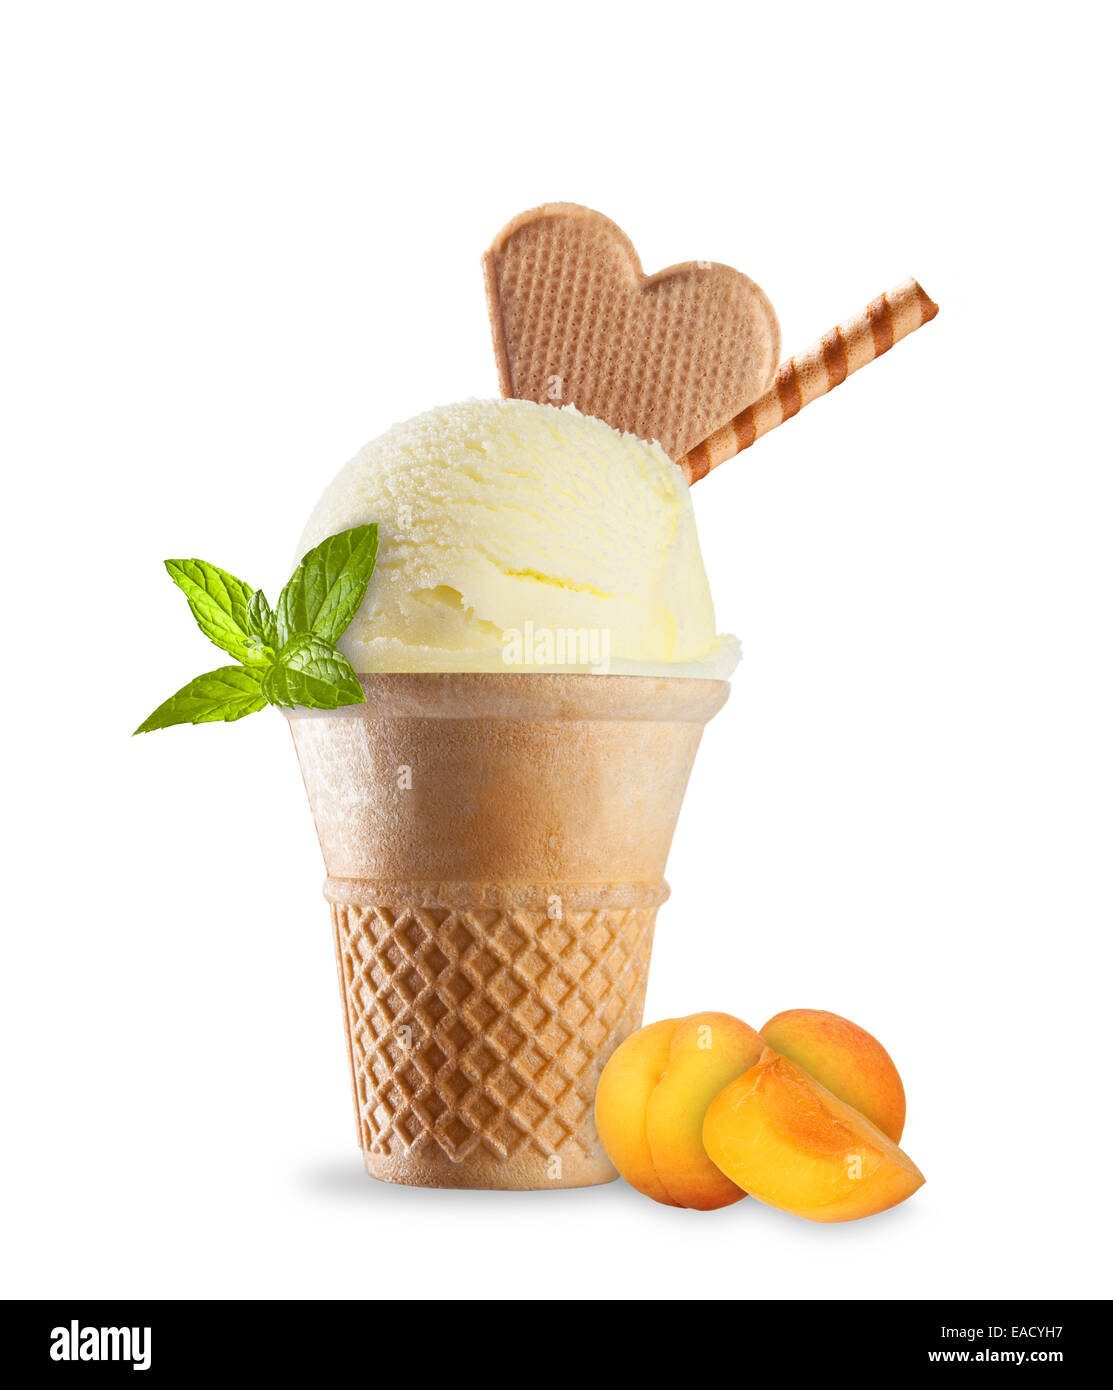 Foto de estudio aislado de helado en cono waffle sobre fondo blanco. Foto de stock